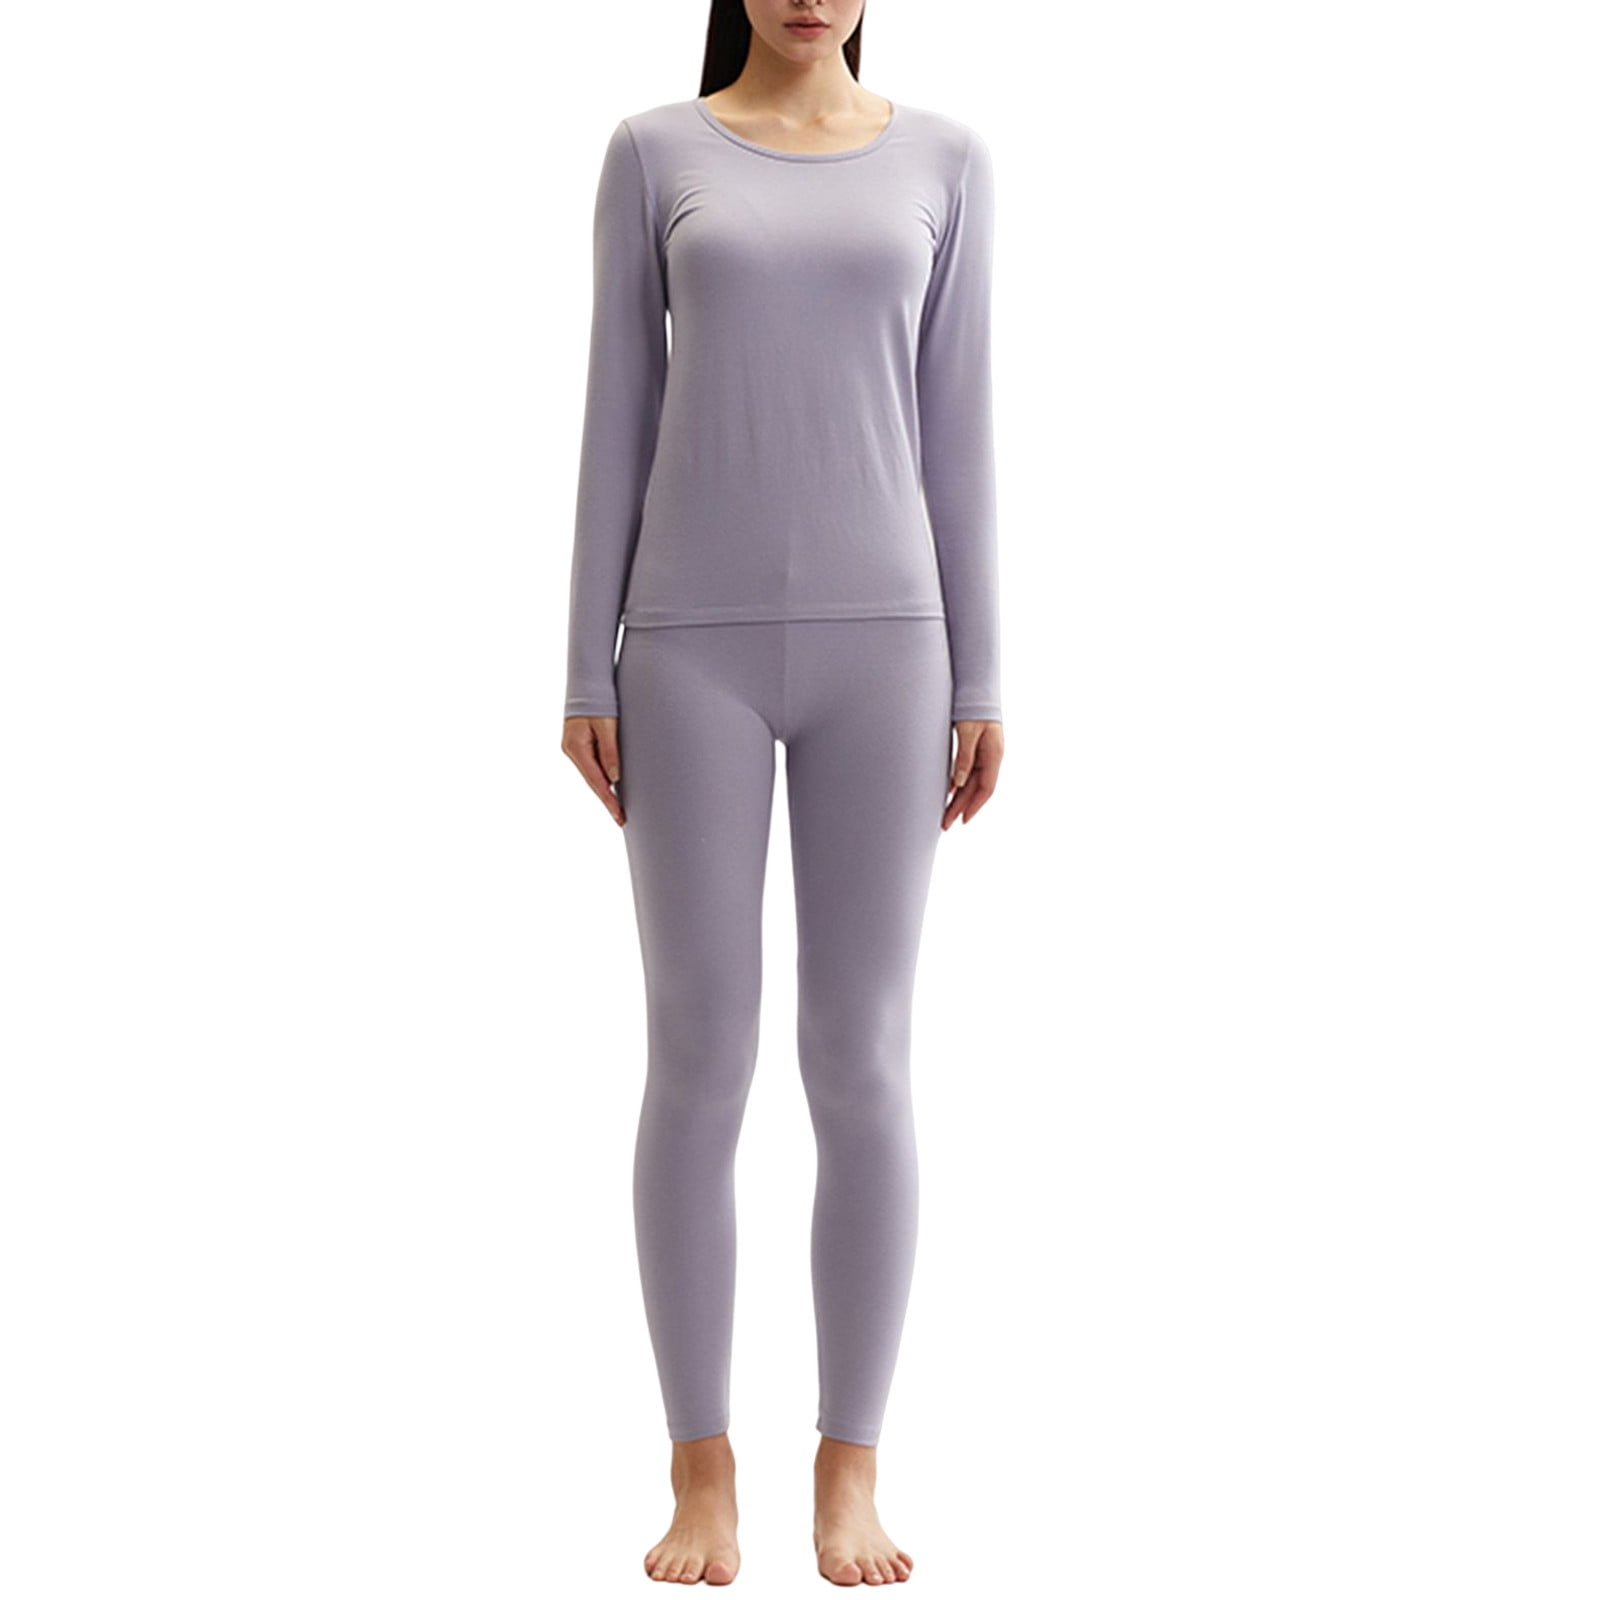 Limei 2Pcs Women's Thermal Underwear Set, Cotton Long Johns Lightweight Top  & Bottom